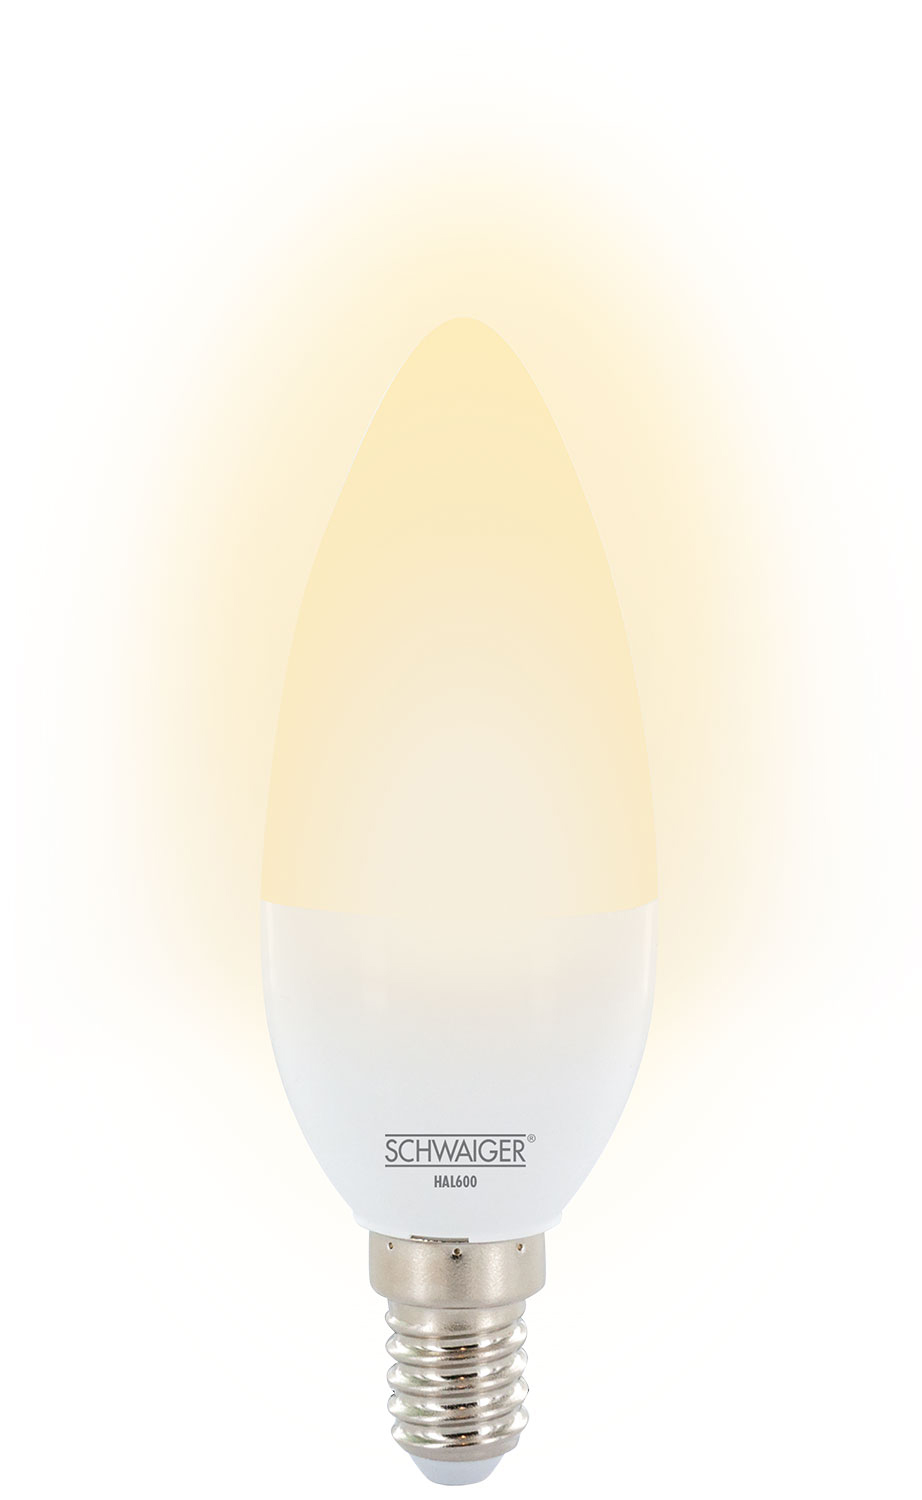 SCHWAIGER -HAL600- Warmweiß LED Wohnlicht dimmbares (E14) als Leuchtmittel